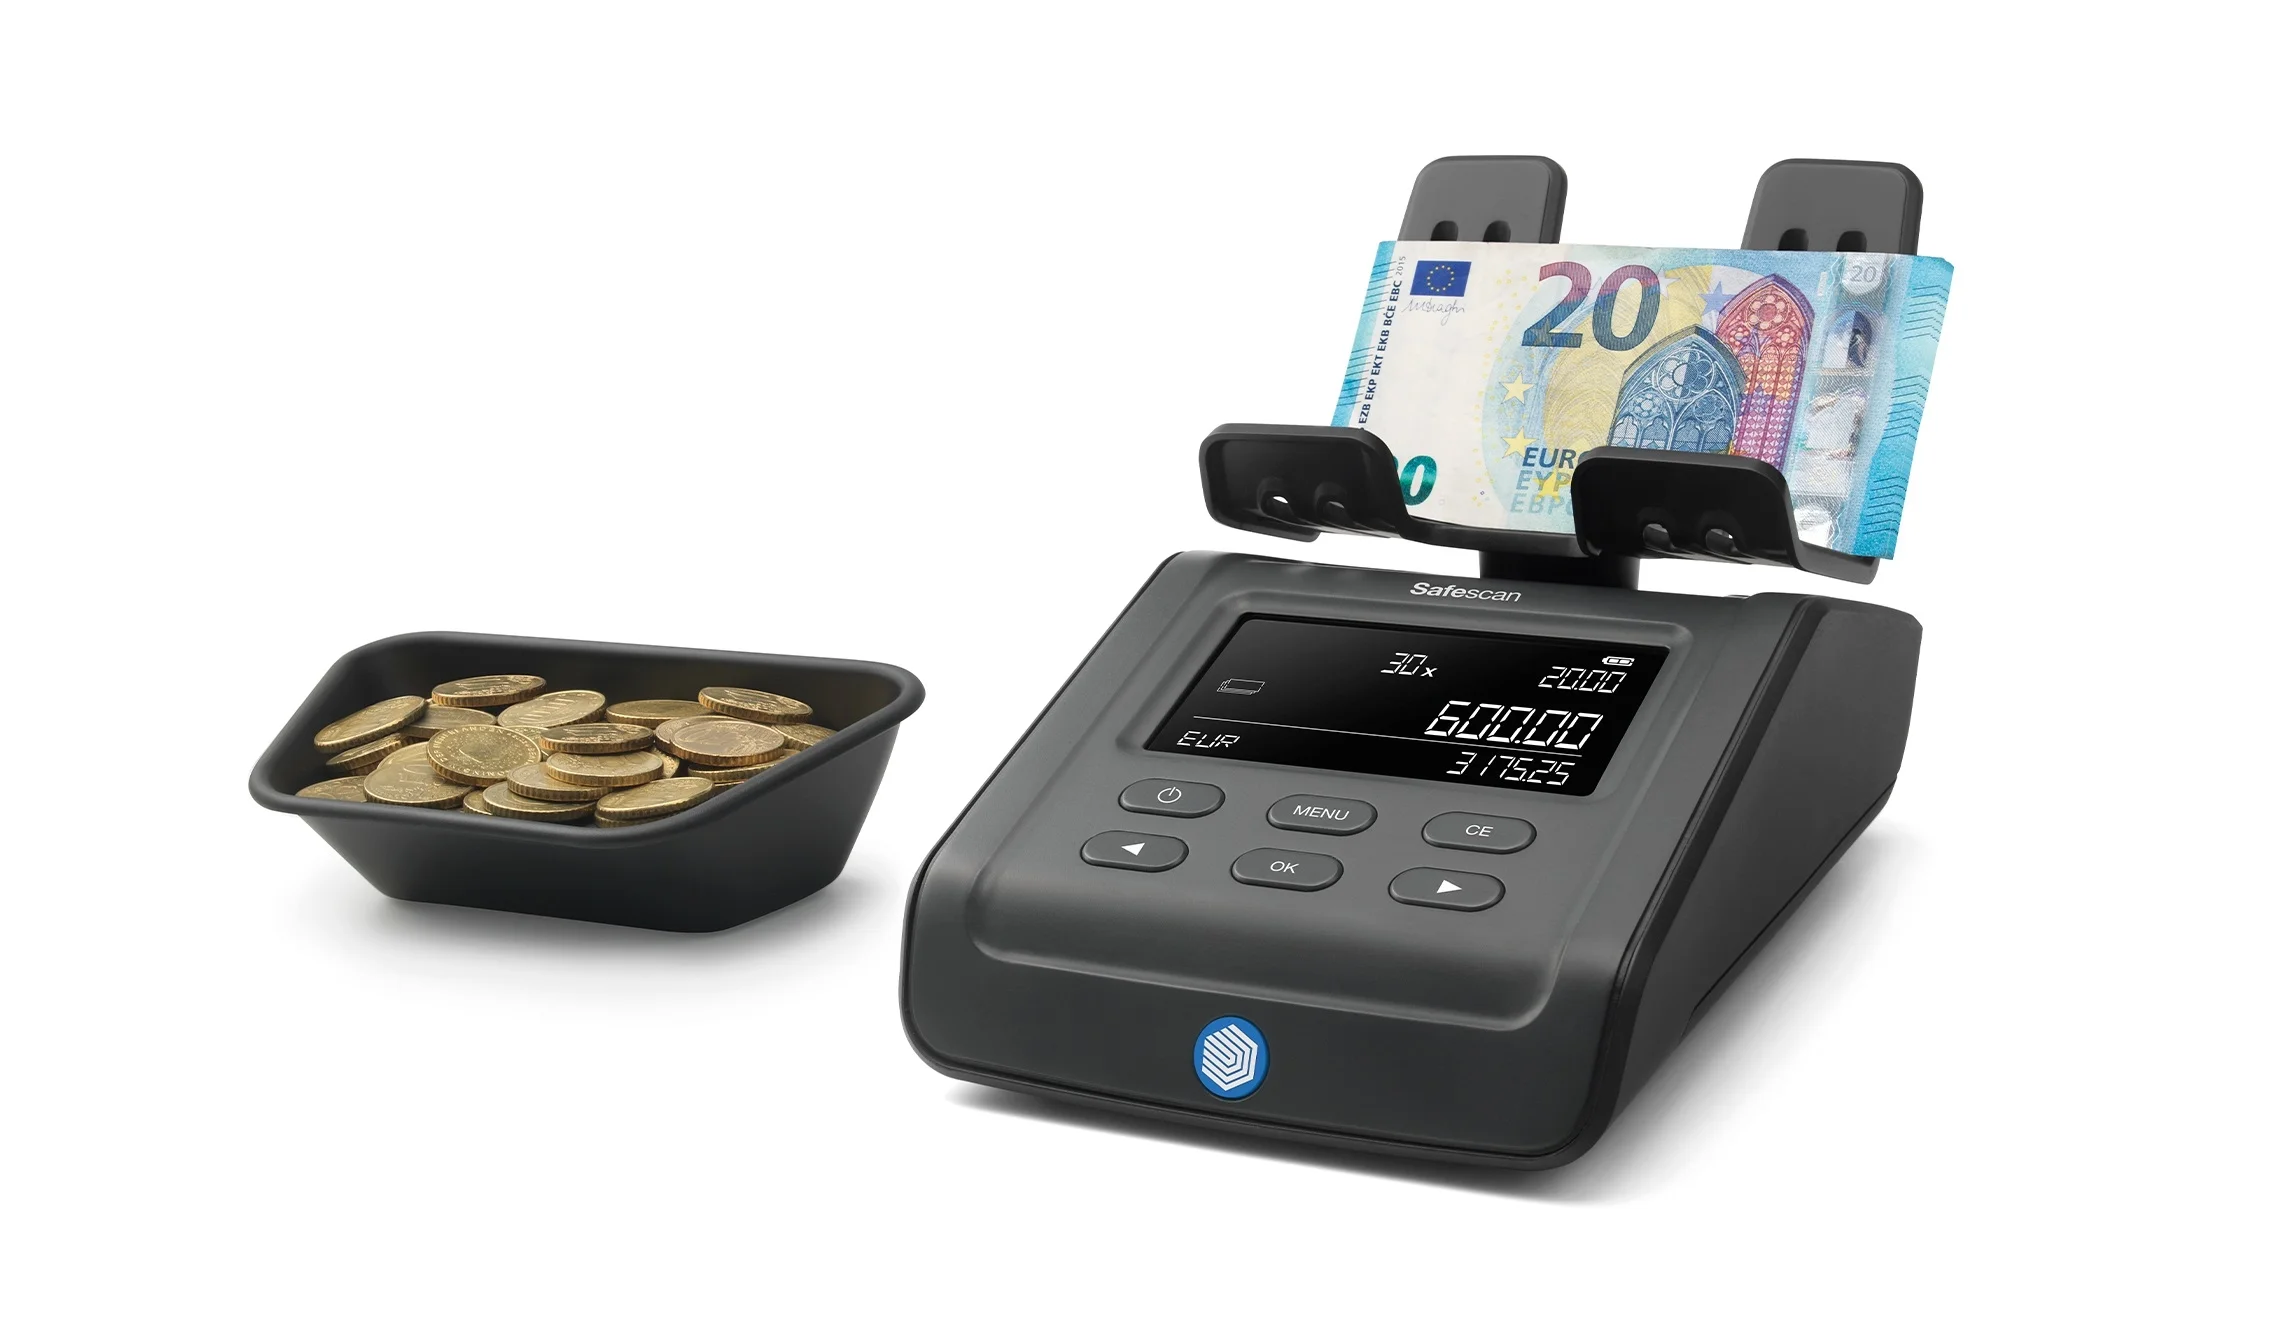 Safescan 6175 Balanza Contadora de Dinero - Cuenta Billetes y Monedas por su Peso - Tambien Articulos no Monetarios